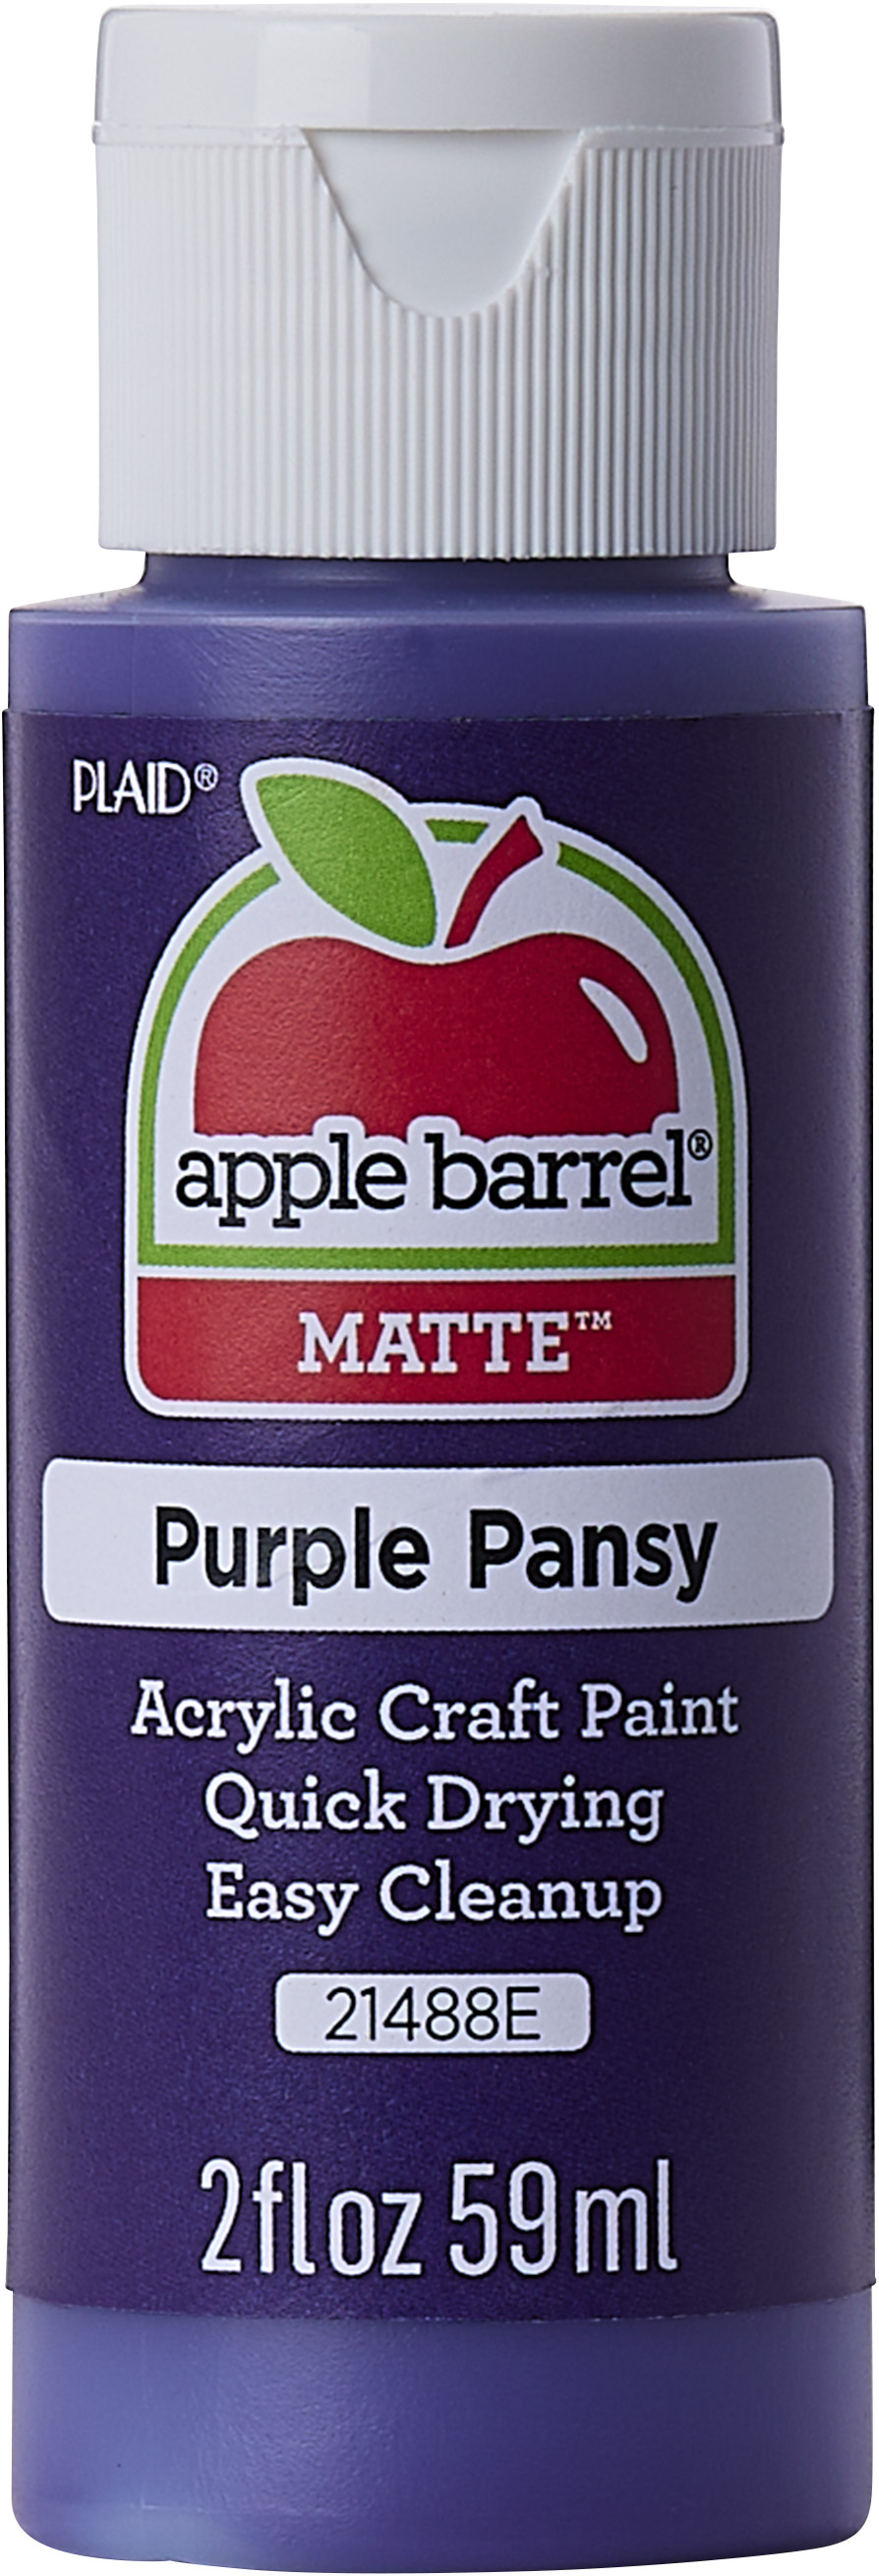 Plaid Apple Barrel Acrylic Paint Set - Royal Violet & Lavender